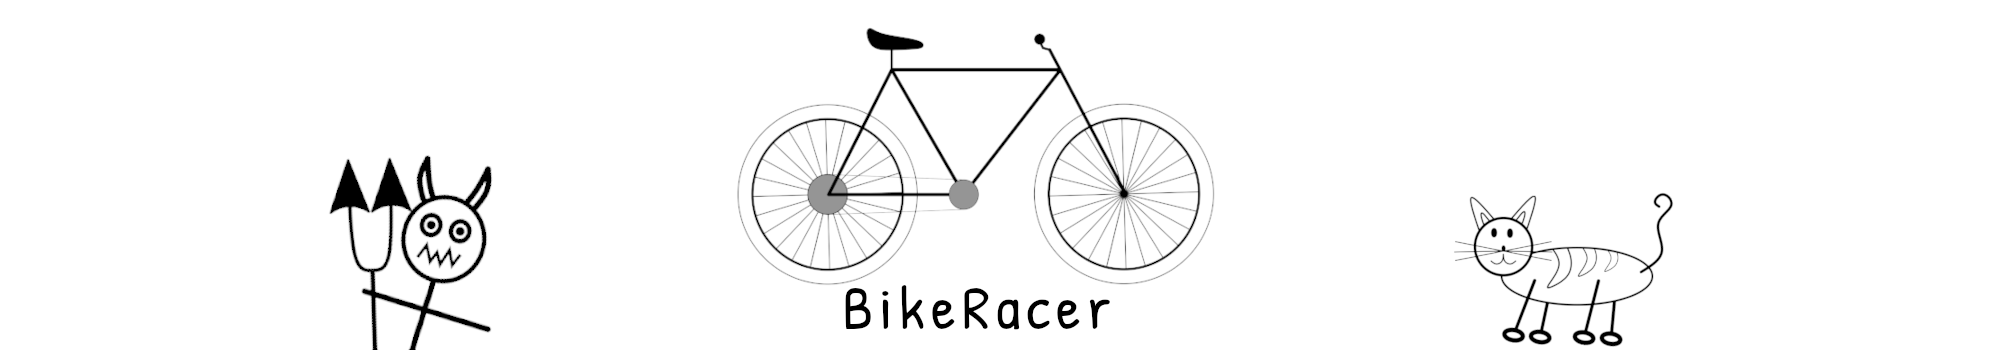 BikeRacer